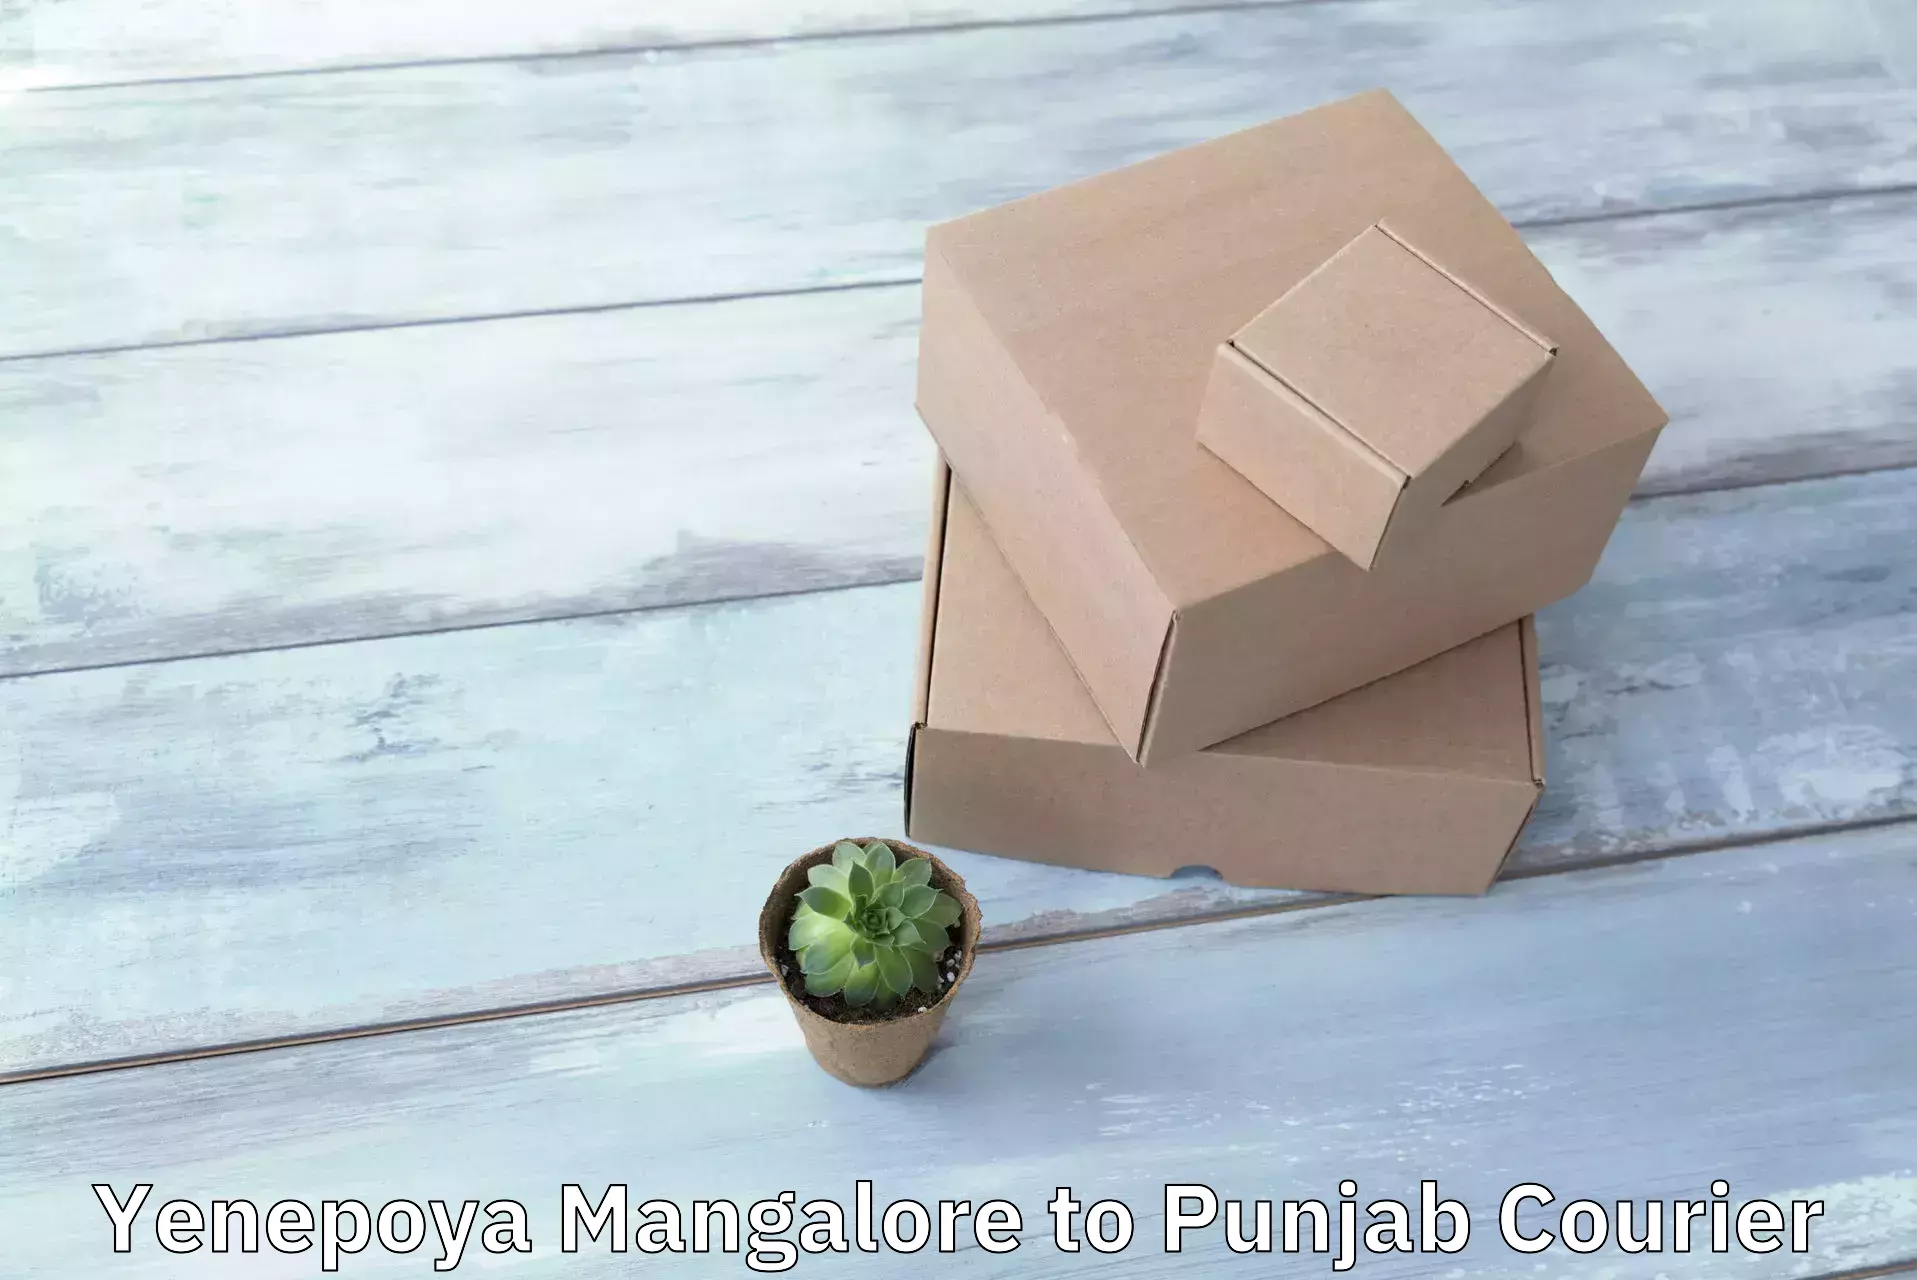 24/7 courier service Yenepoya Mangalore to Punjab